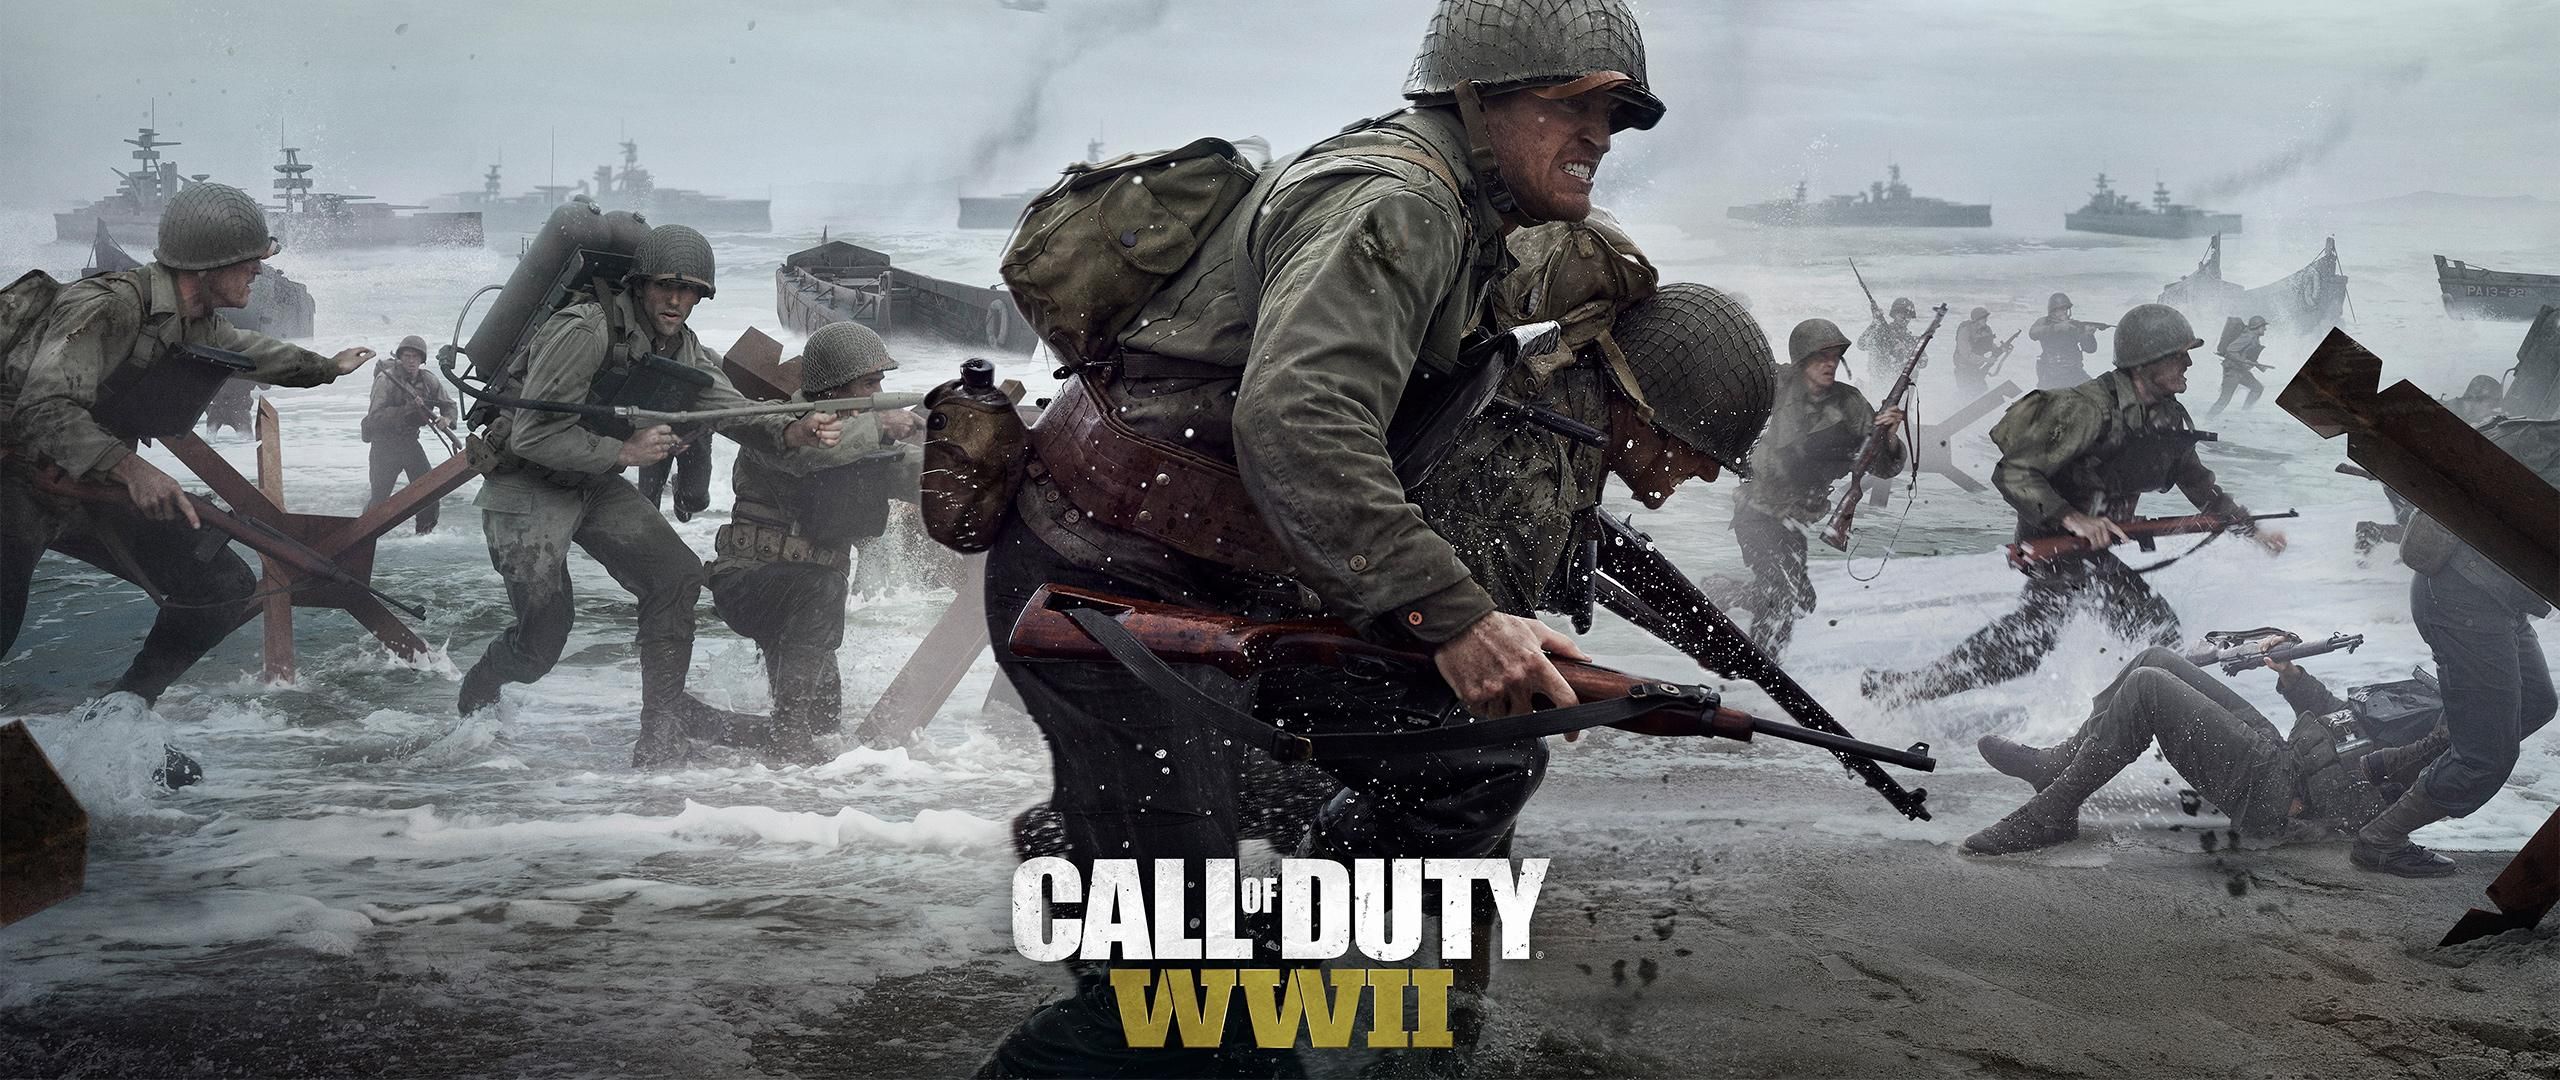 "추천곡" Call of Duty WWII 콜 오브 듀티 월드 워2 OST - A Brotherhood Of Heroes 오프닝 메인테마 (웅장, 장엄, 비장, 진지, 긴박, 게임, 콜옵, 2차대전, 전쟁)